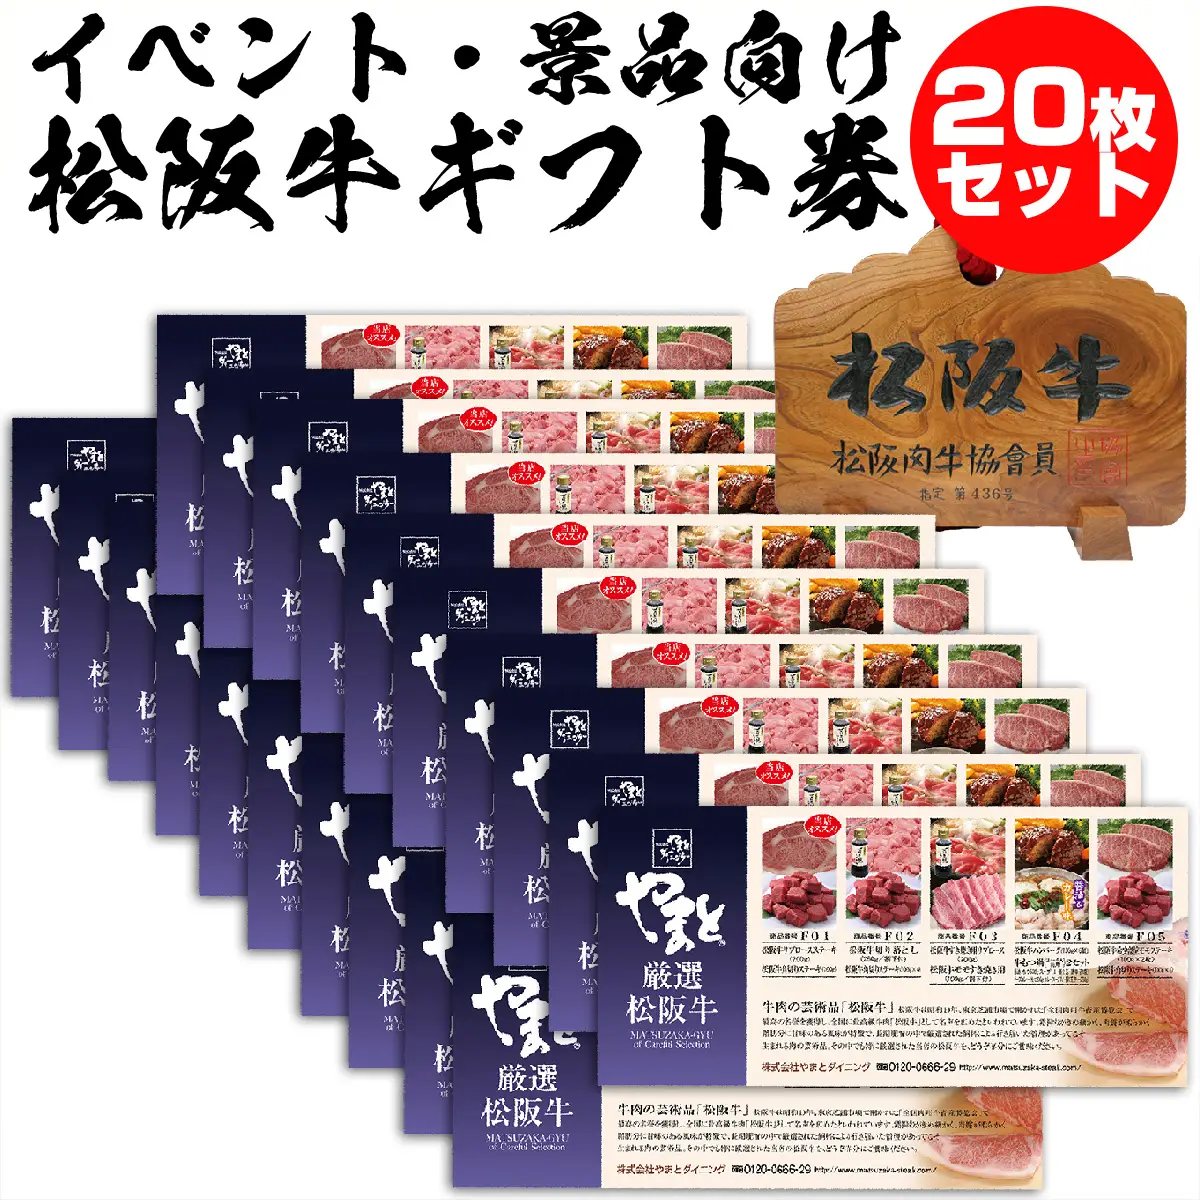  松阪牛（松坂牛）お肉 の カタログ ギフト券 8500円 【送料無料】】 20枚セット